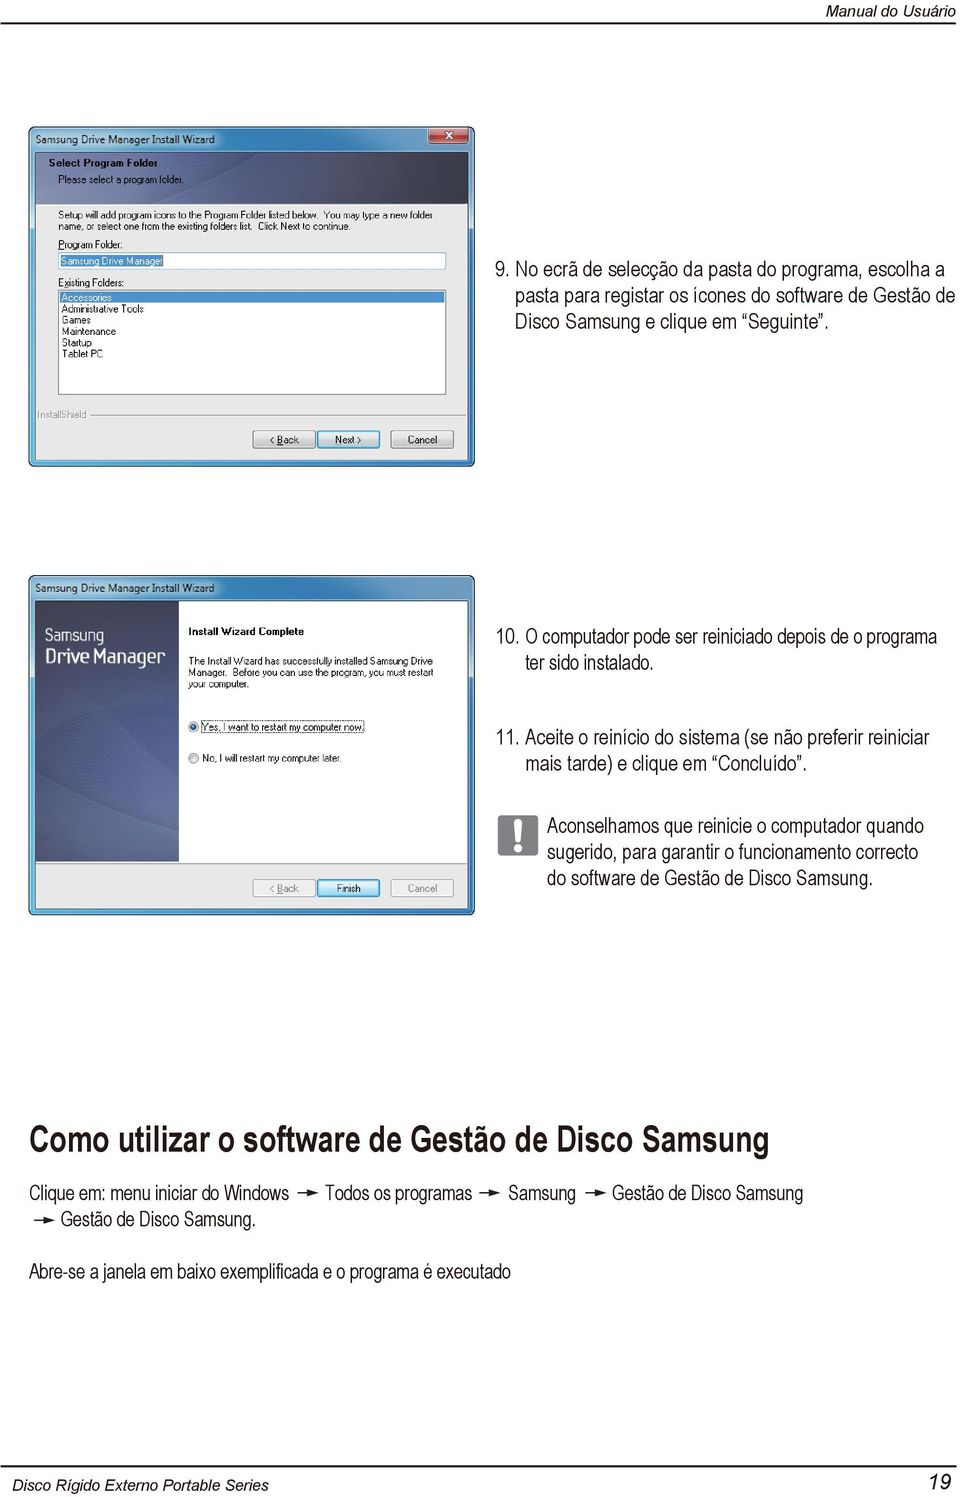 Aconselhamos que reinicie o computador quando sugerido, para garantir o funcionamento correcto do software de Gestão de Disco Samsung.